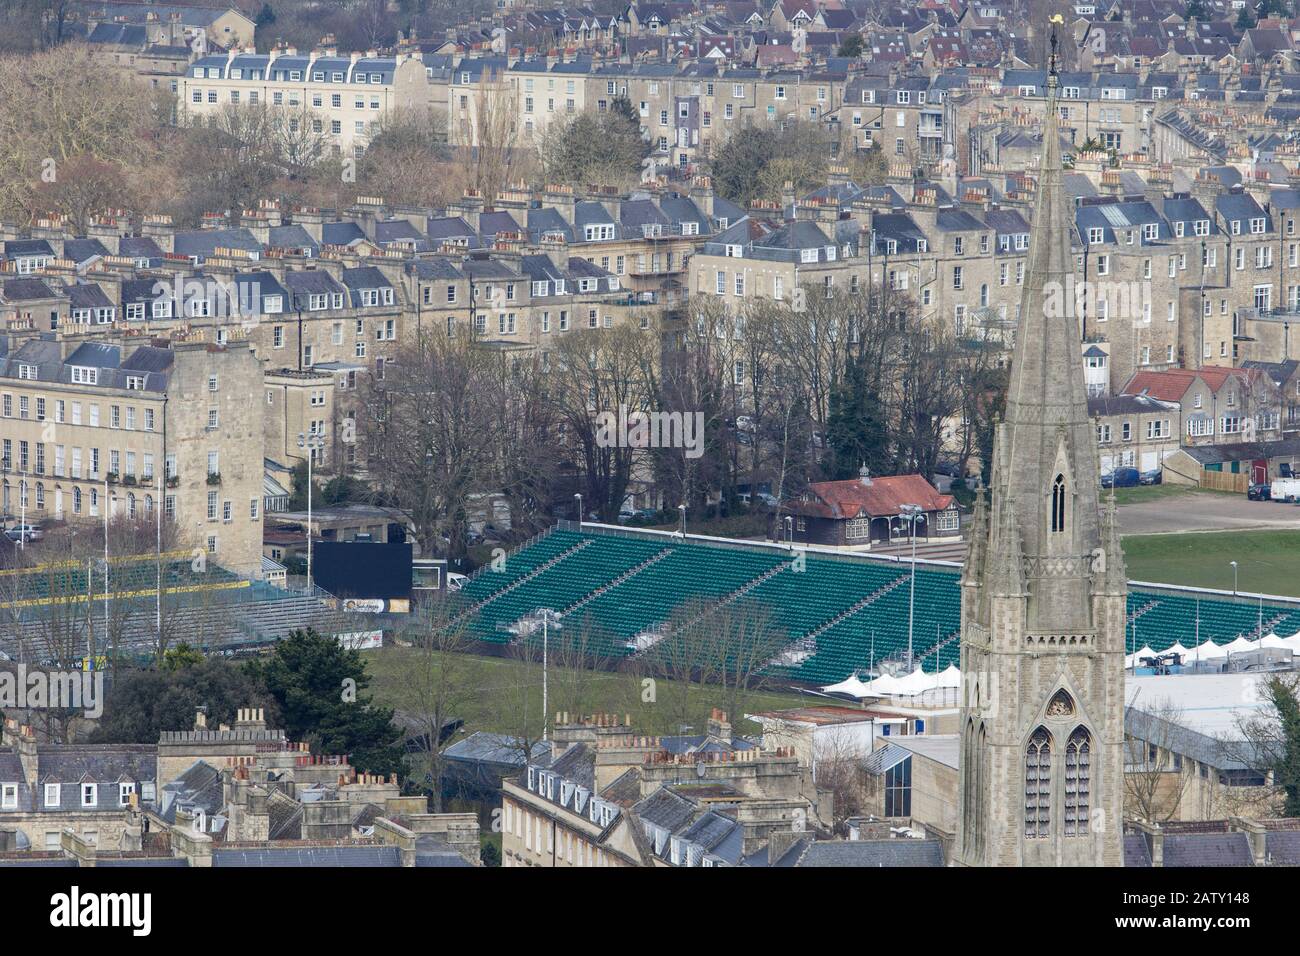 Blick auf die Landschaft der Stadt Bath vom Alexandra Park aus, der Bath Erholung Rugby Ground, Häuser und die Architektur von Bath, England, Großbritannien zeigt Stockfoto